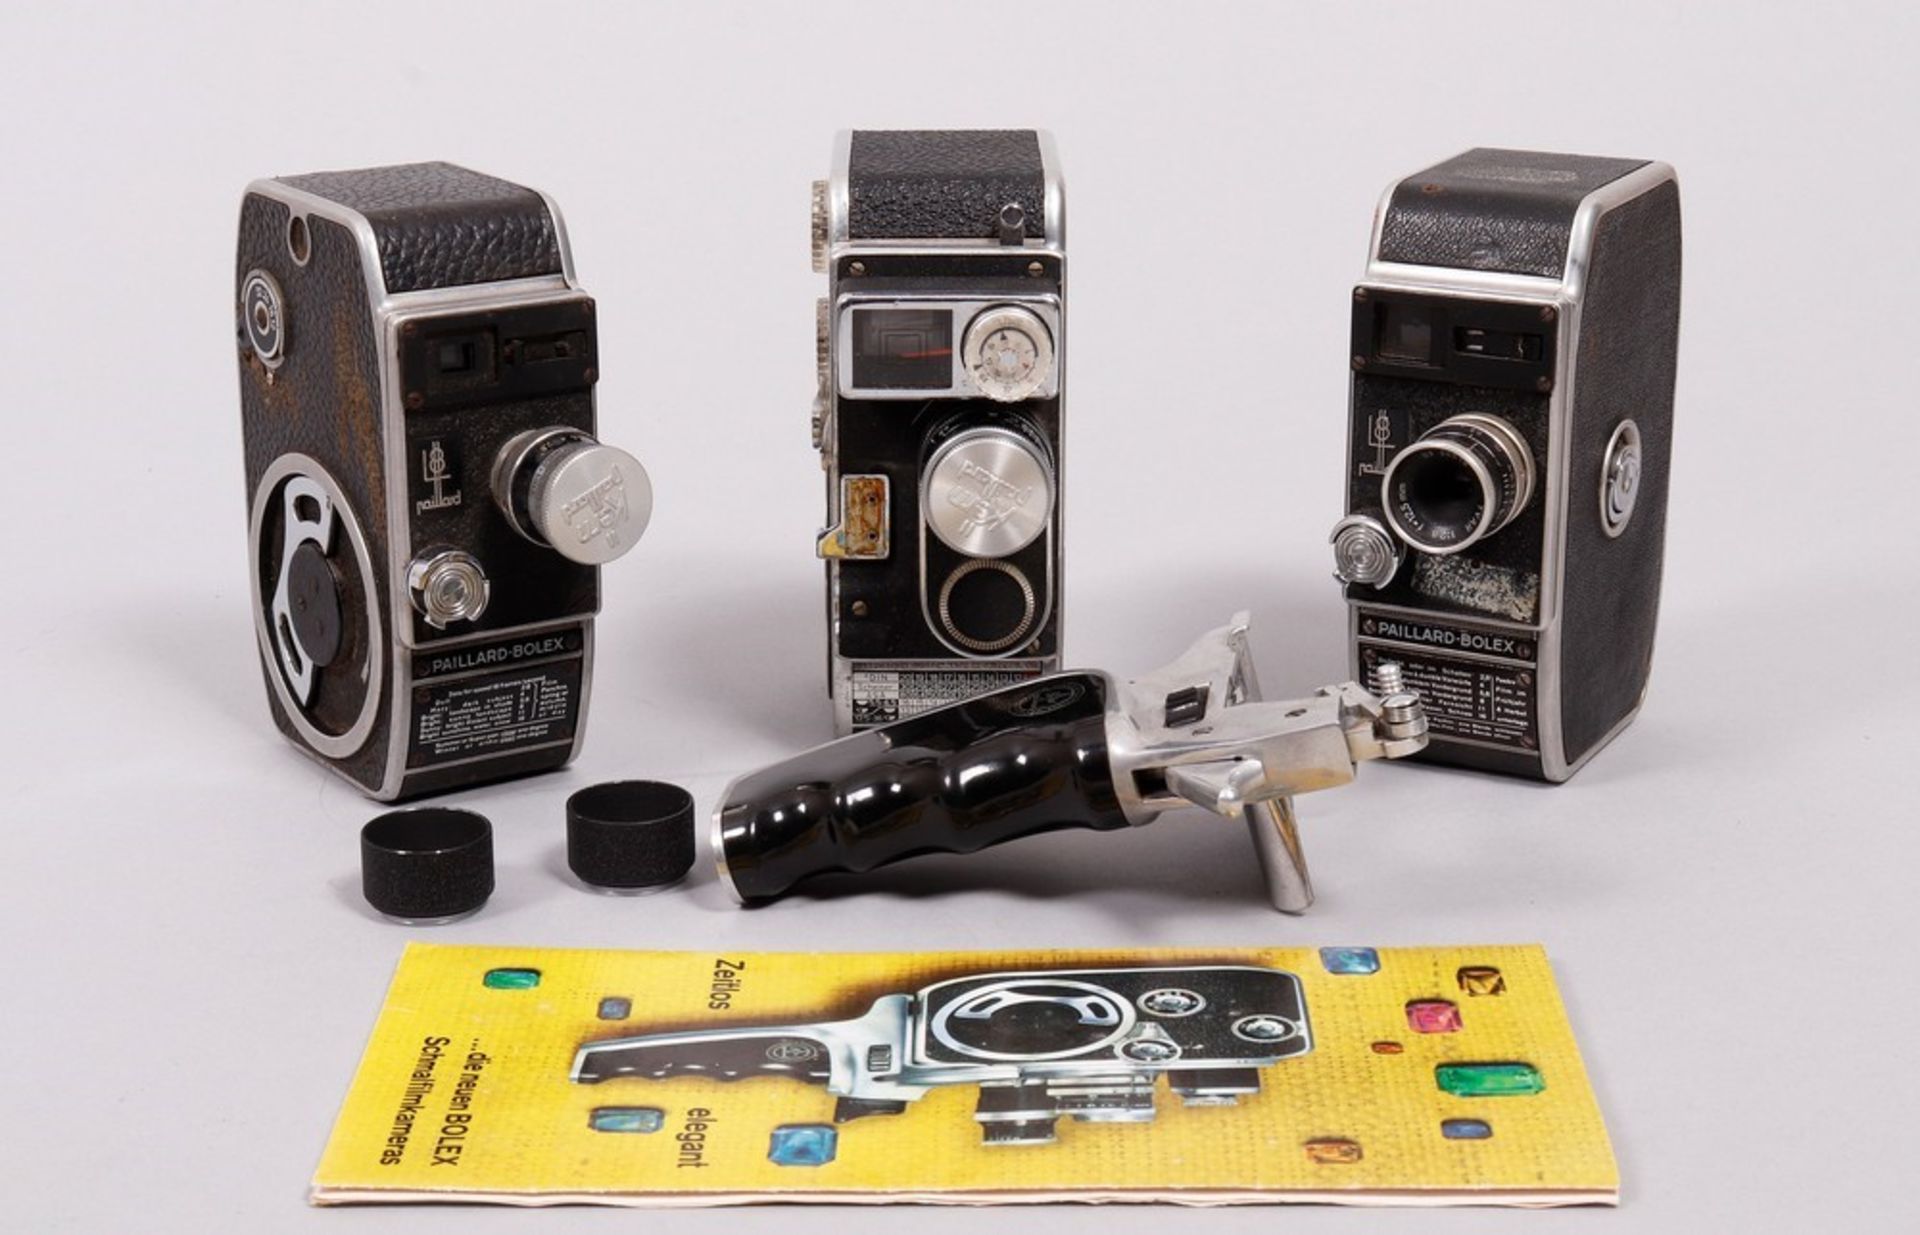 3 8mm film cameras, Bolex & Paillard, mid-20th C.